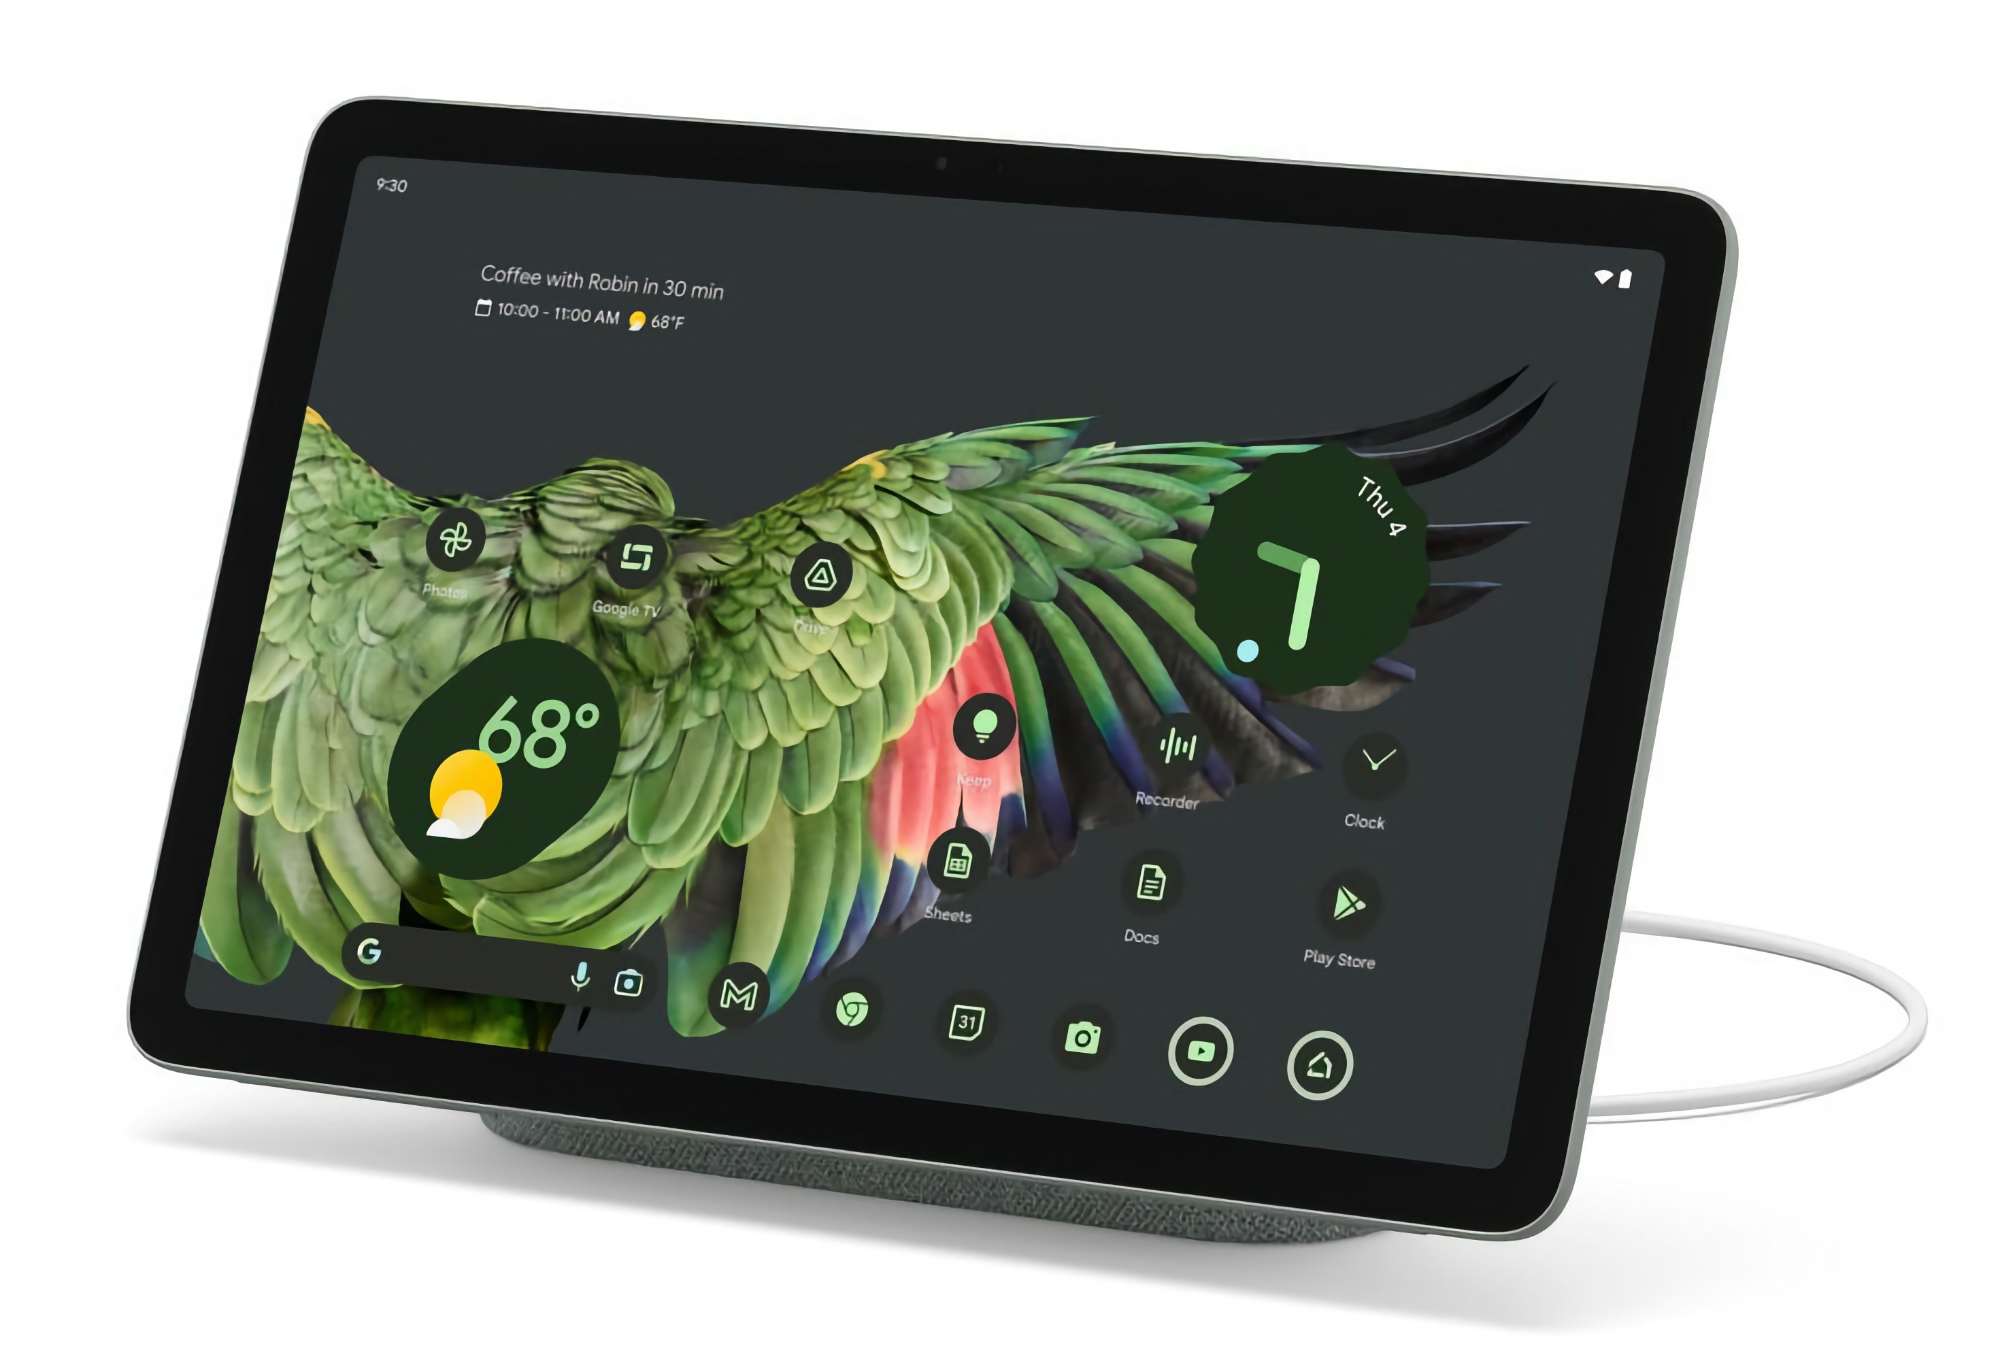 Google Pixel Tablet med inkluderad docka säljs på Amazon med en rabatt på $ 100